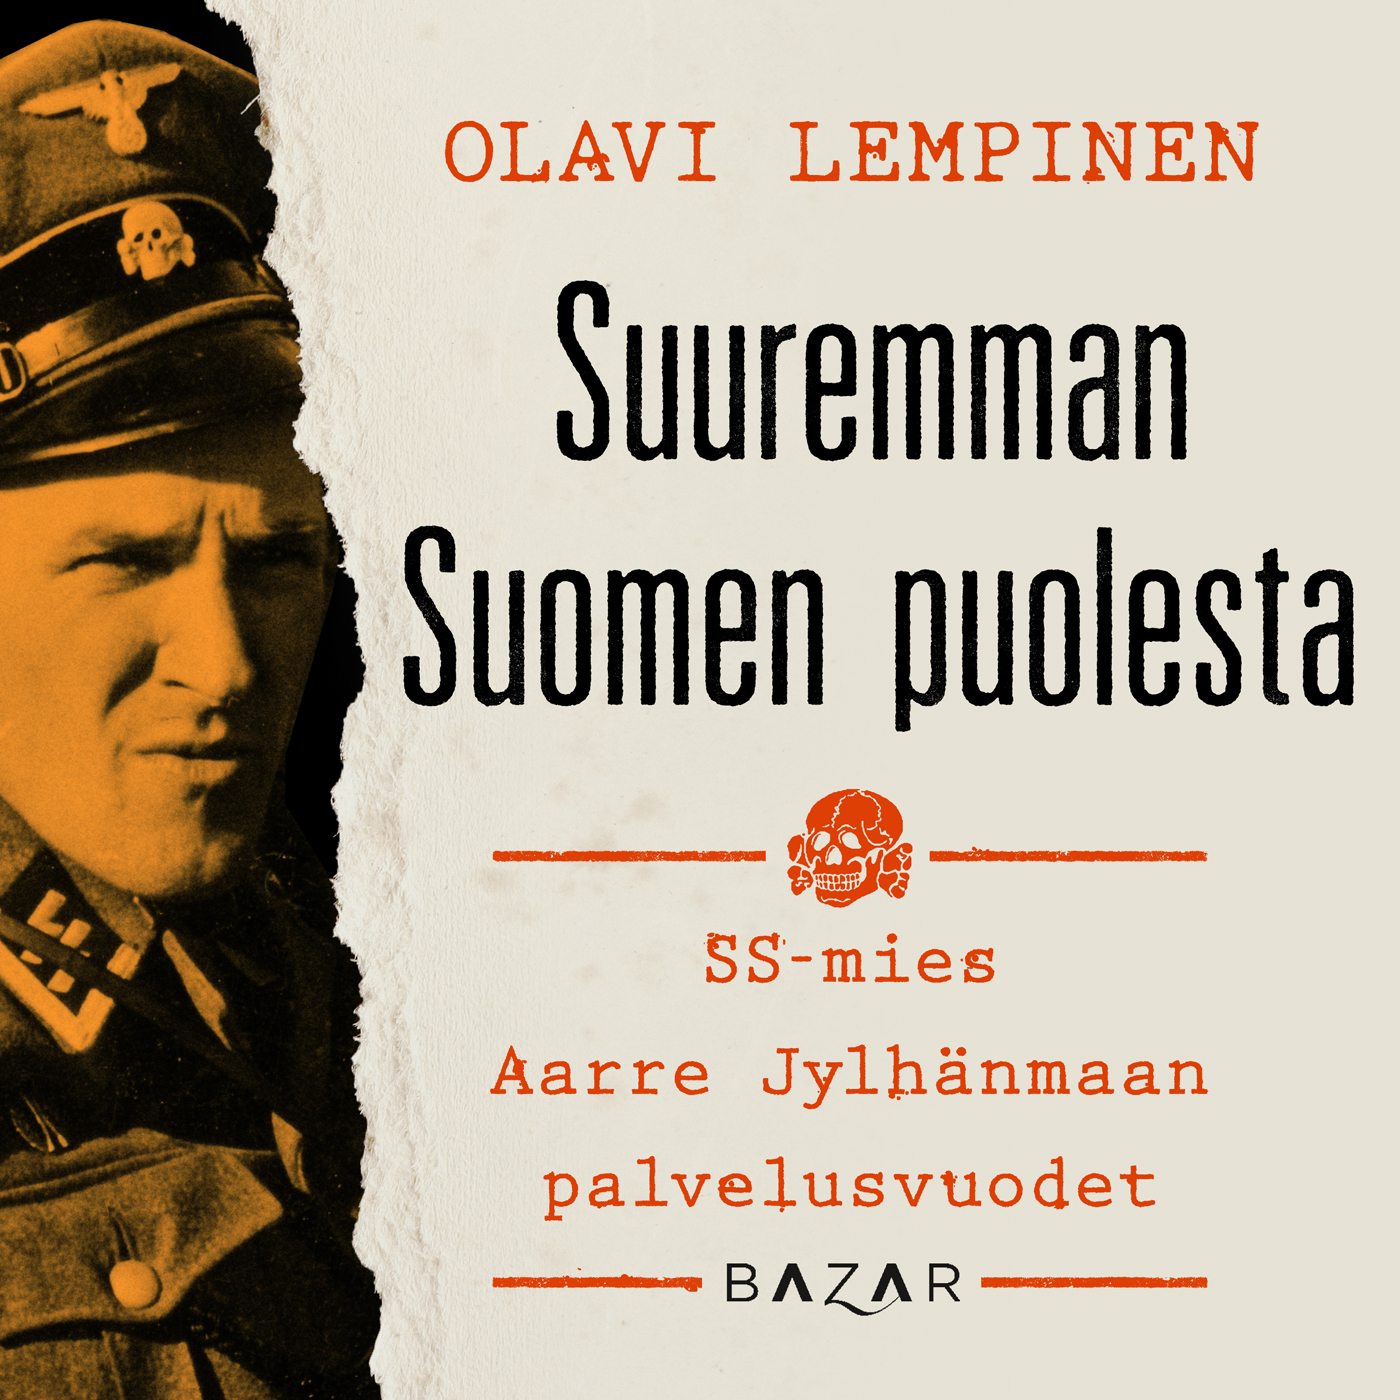 Lempinen, Olavi - Suuremman Suomen puolesta: SS-mies Aarre Jylhänmaan palvelusvuodet, äänikirja